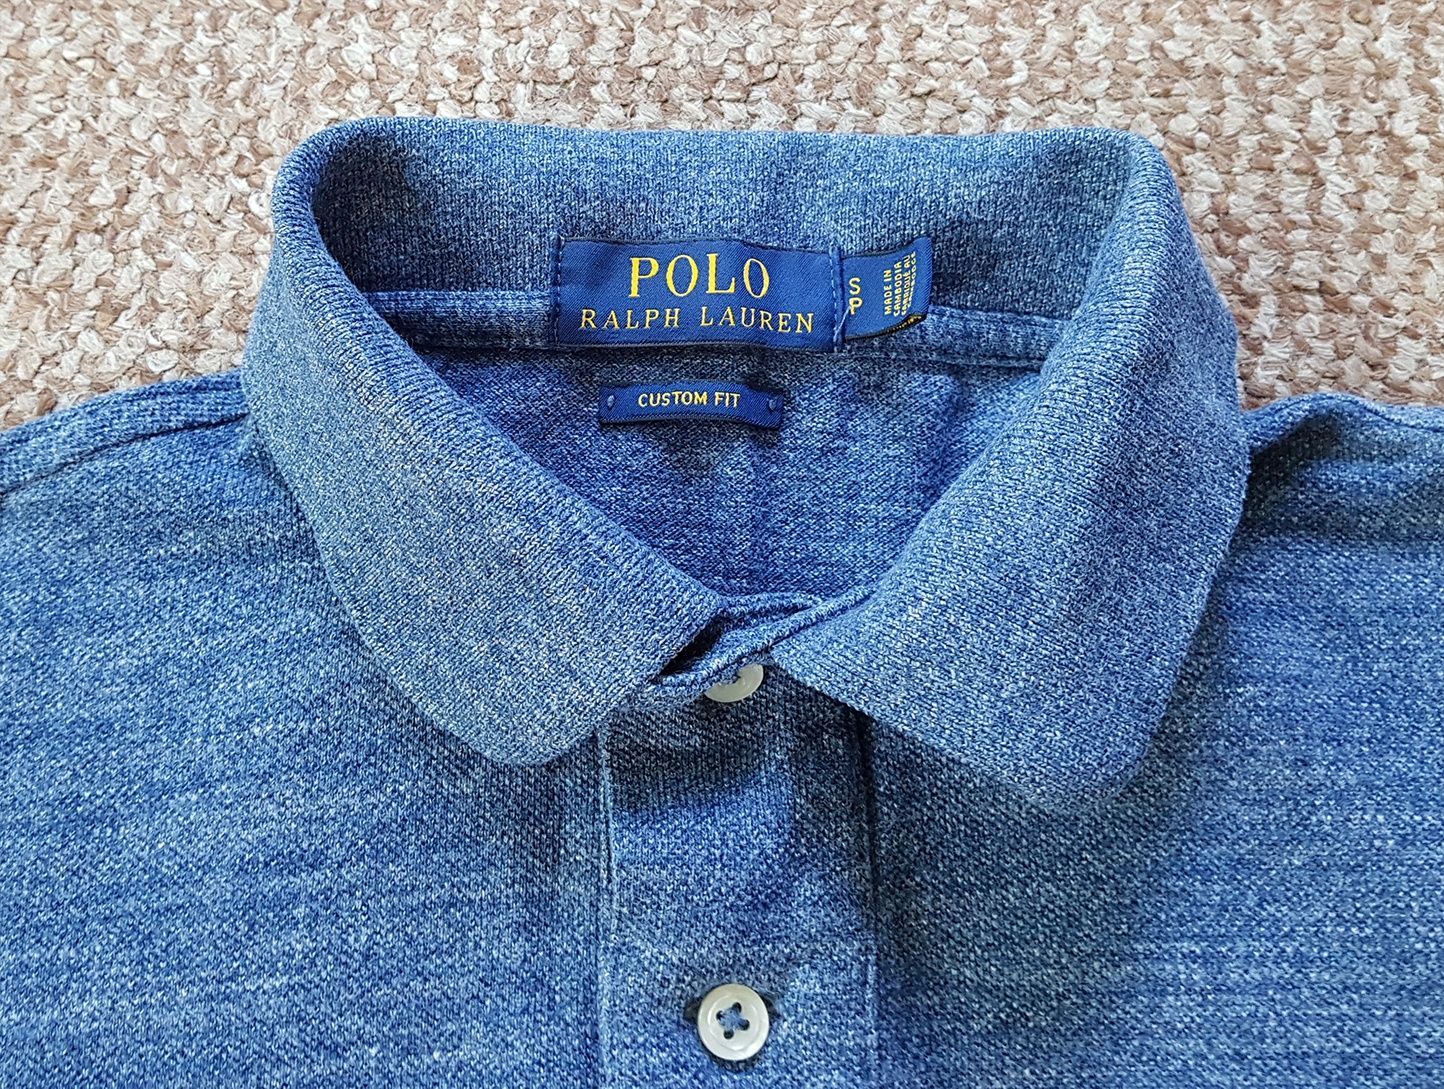 Ralph Lauren Polo поло футболка custom fit Оригинал S синяя